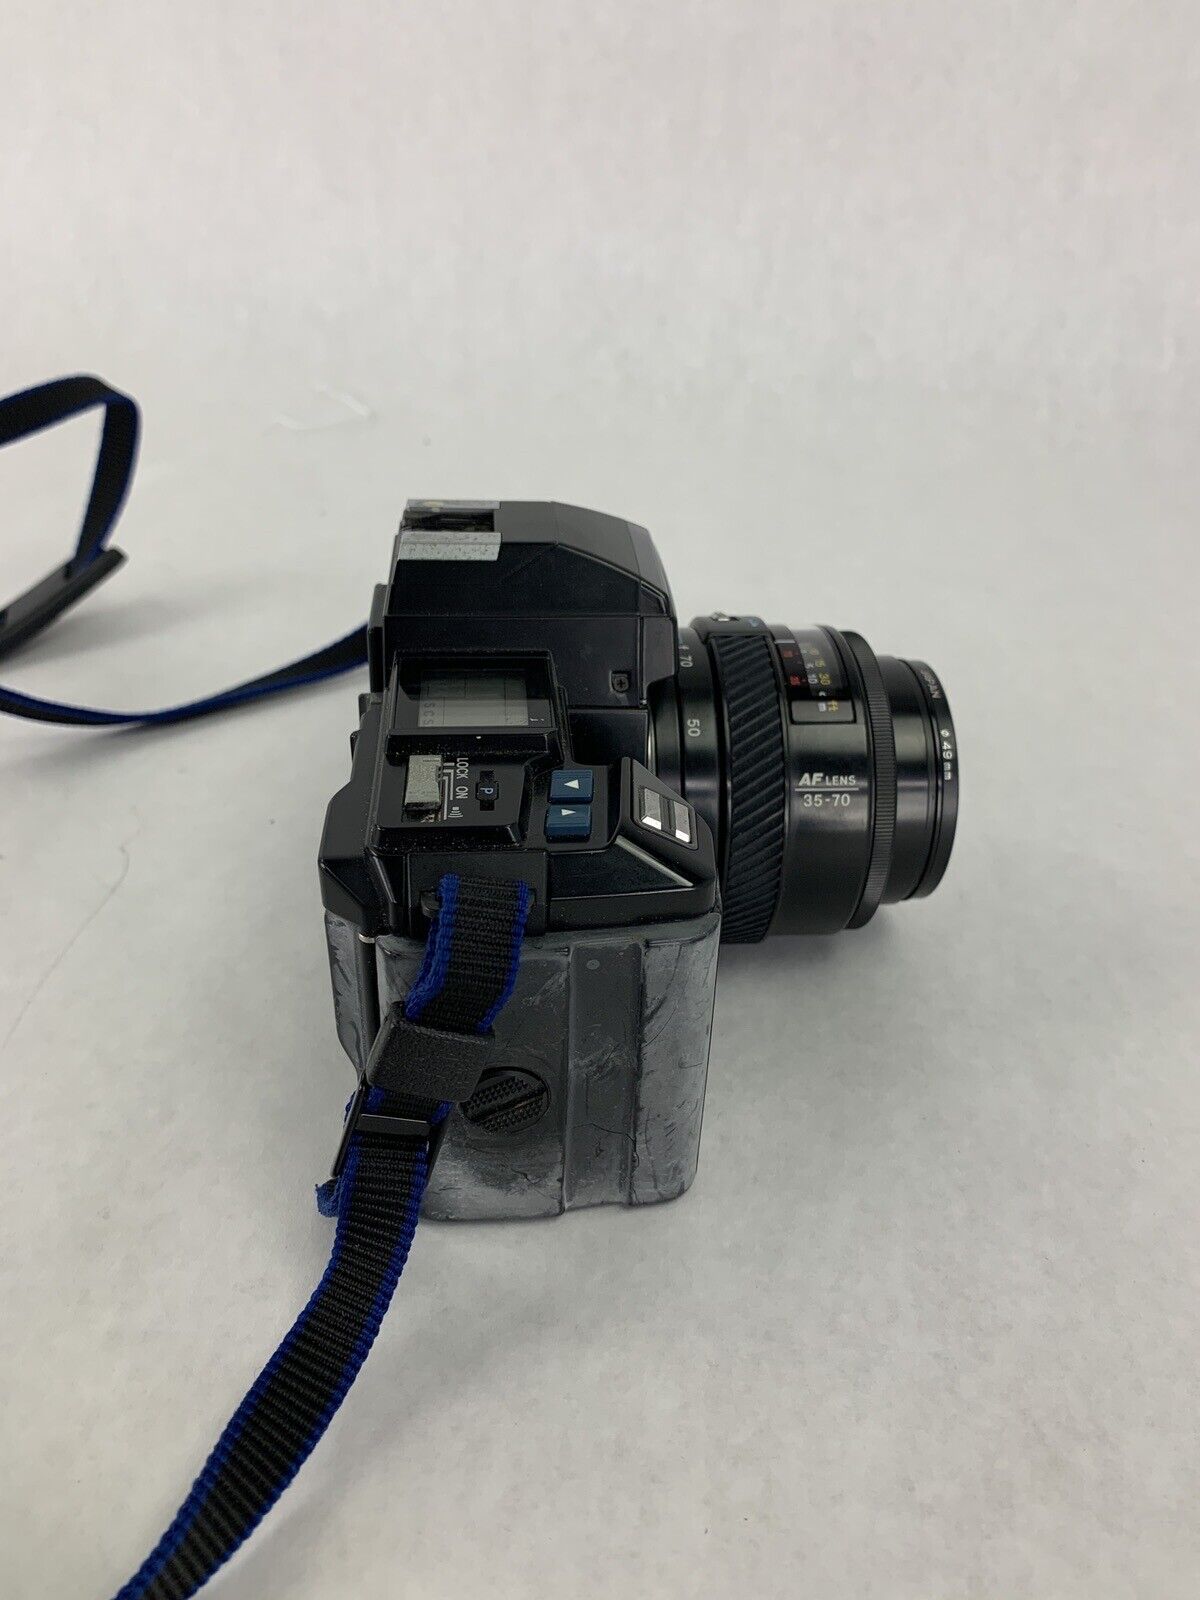 Minolta Maxxum 7000 Film Camera w/ 35-70mm AF Zoom Lens Parts and Repair